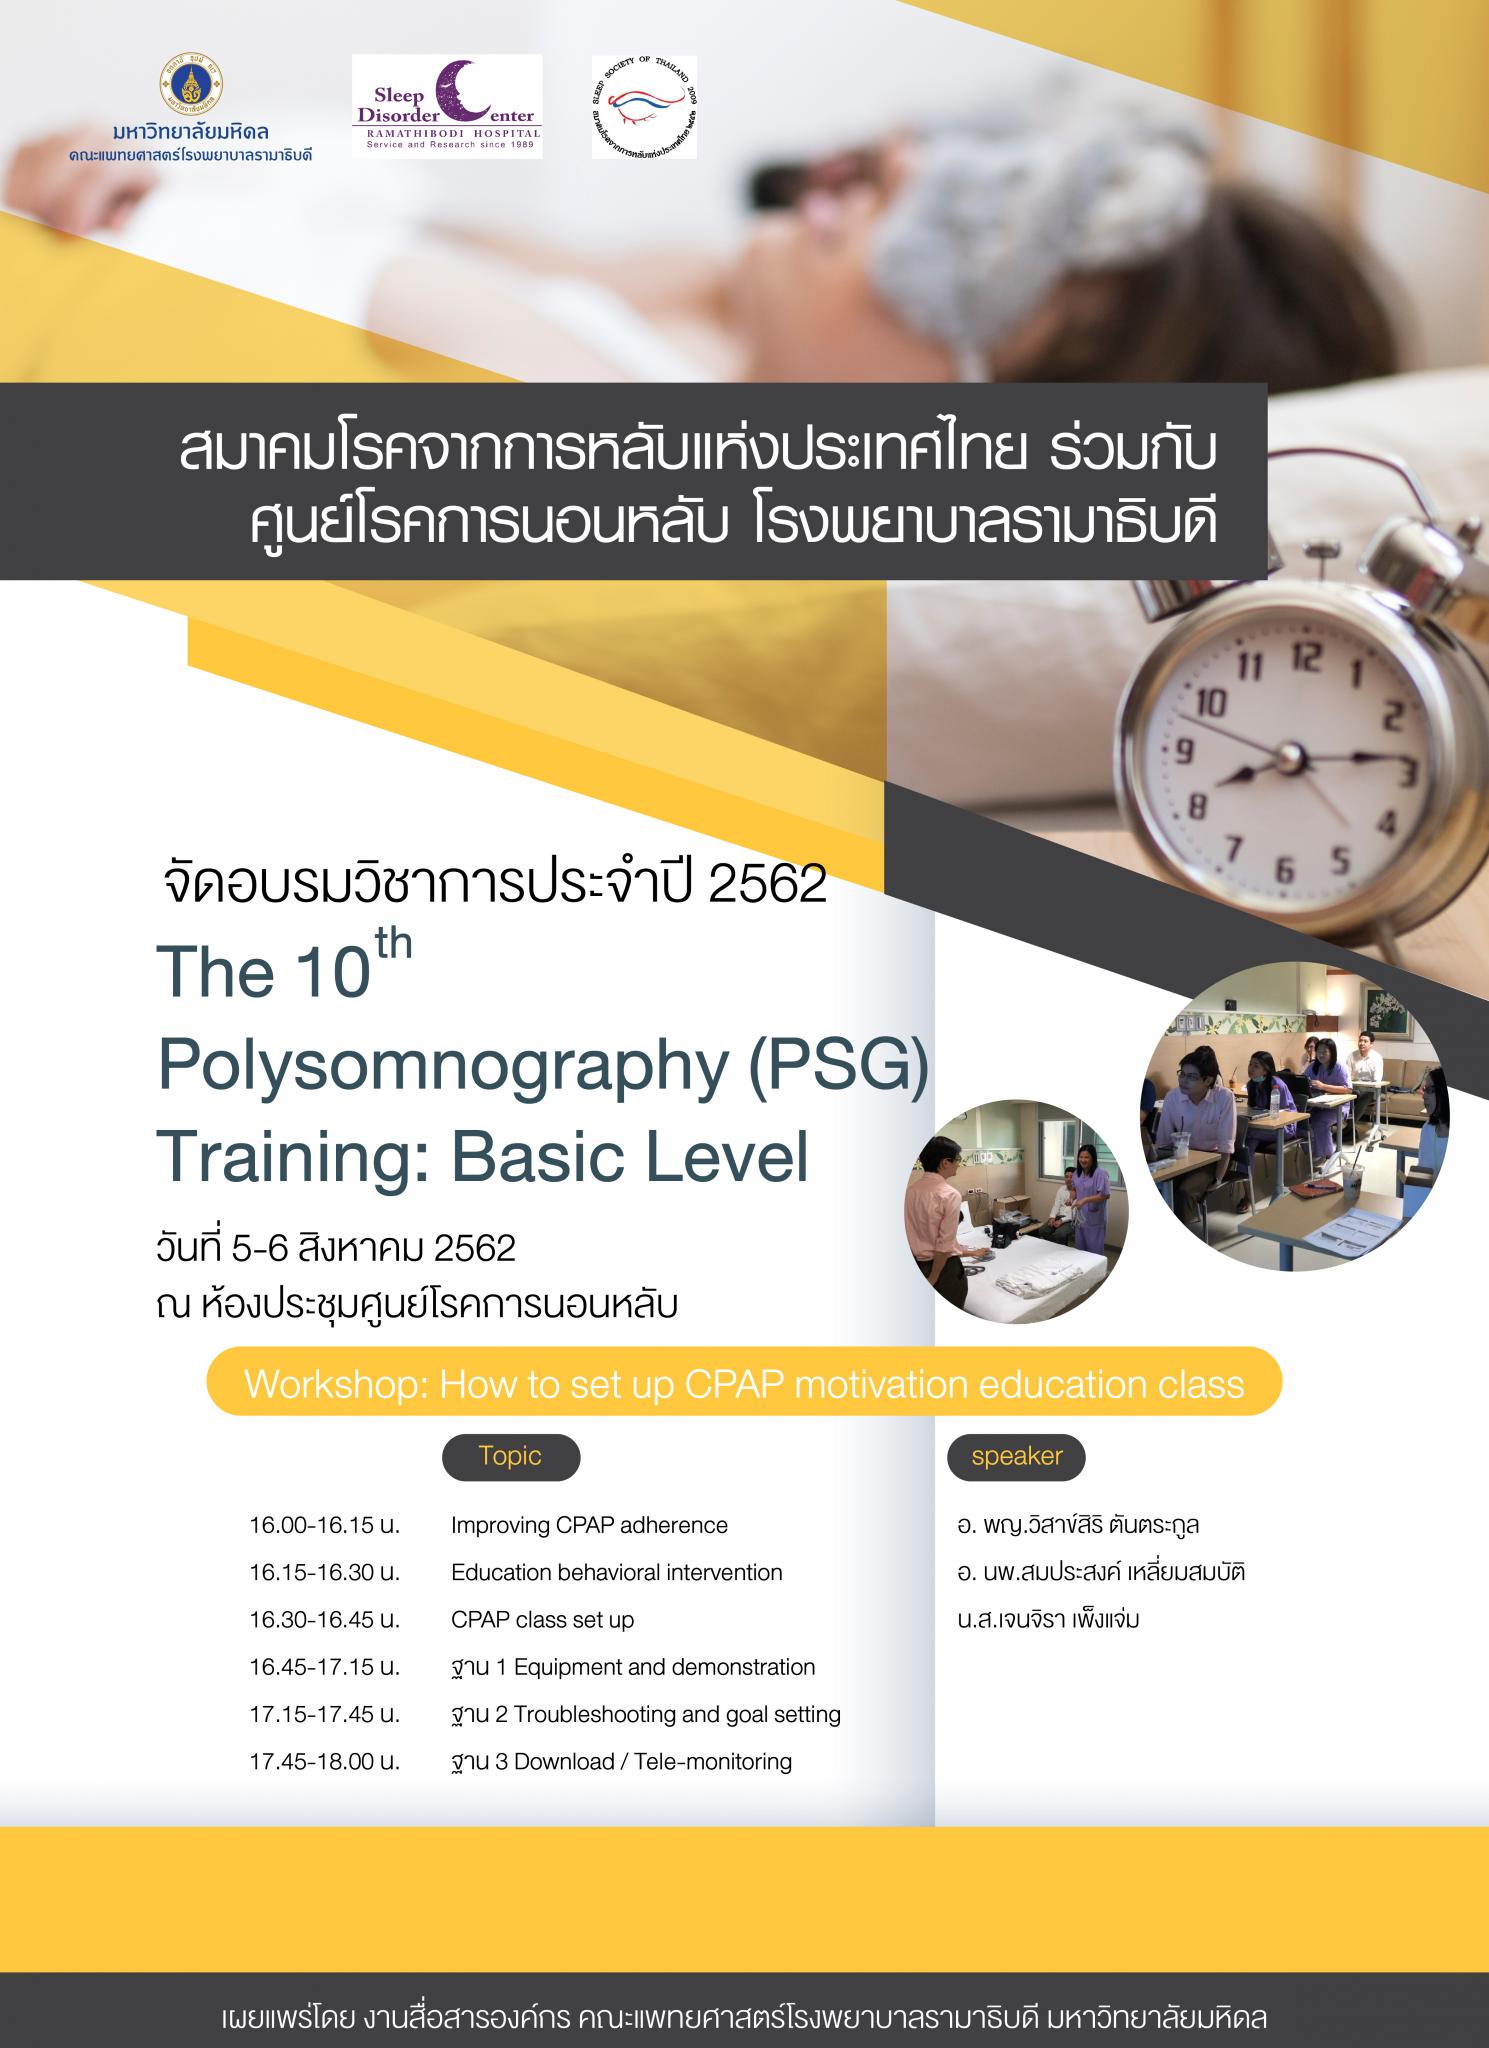 ขอเชิญเข้าร่วมอบรมวิชาการประจำปี 2562 The 10th Polysomnography (PSG) Training: Basic Level